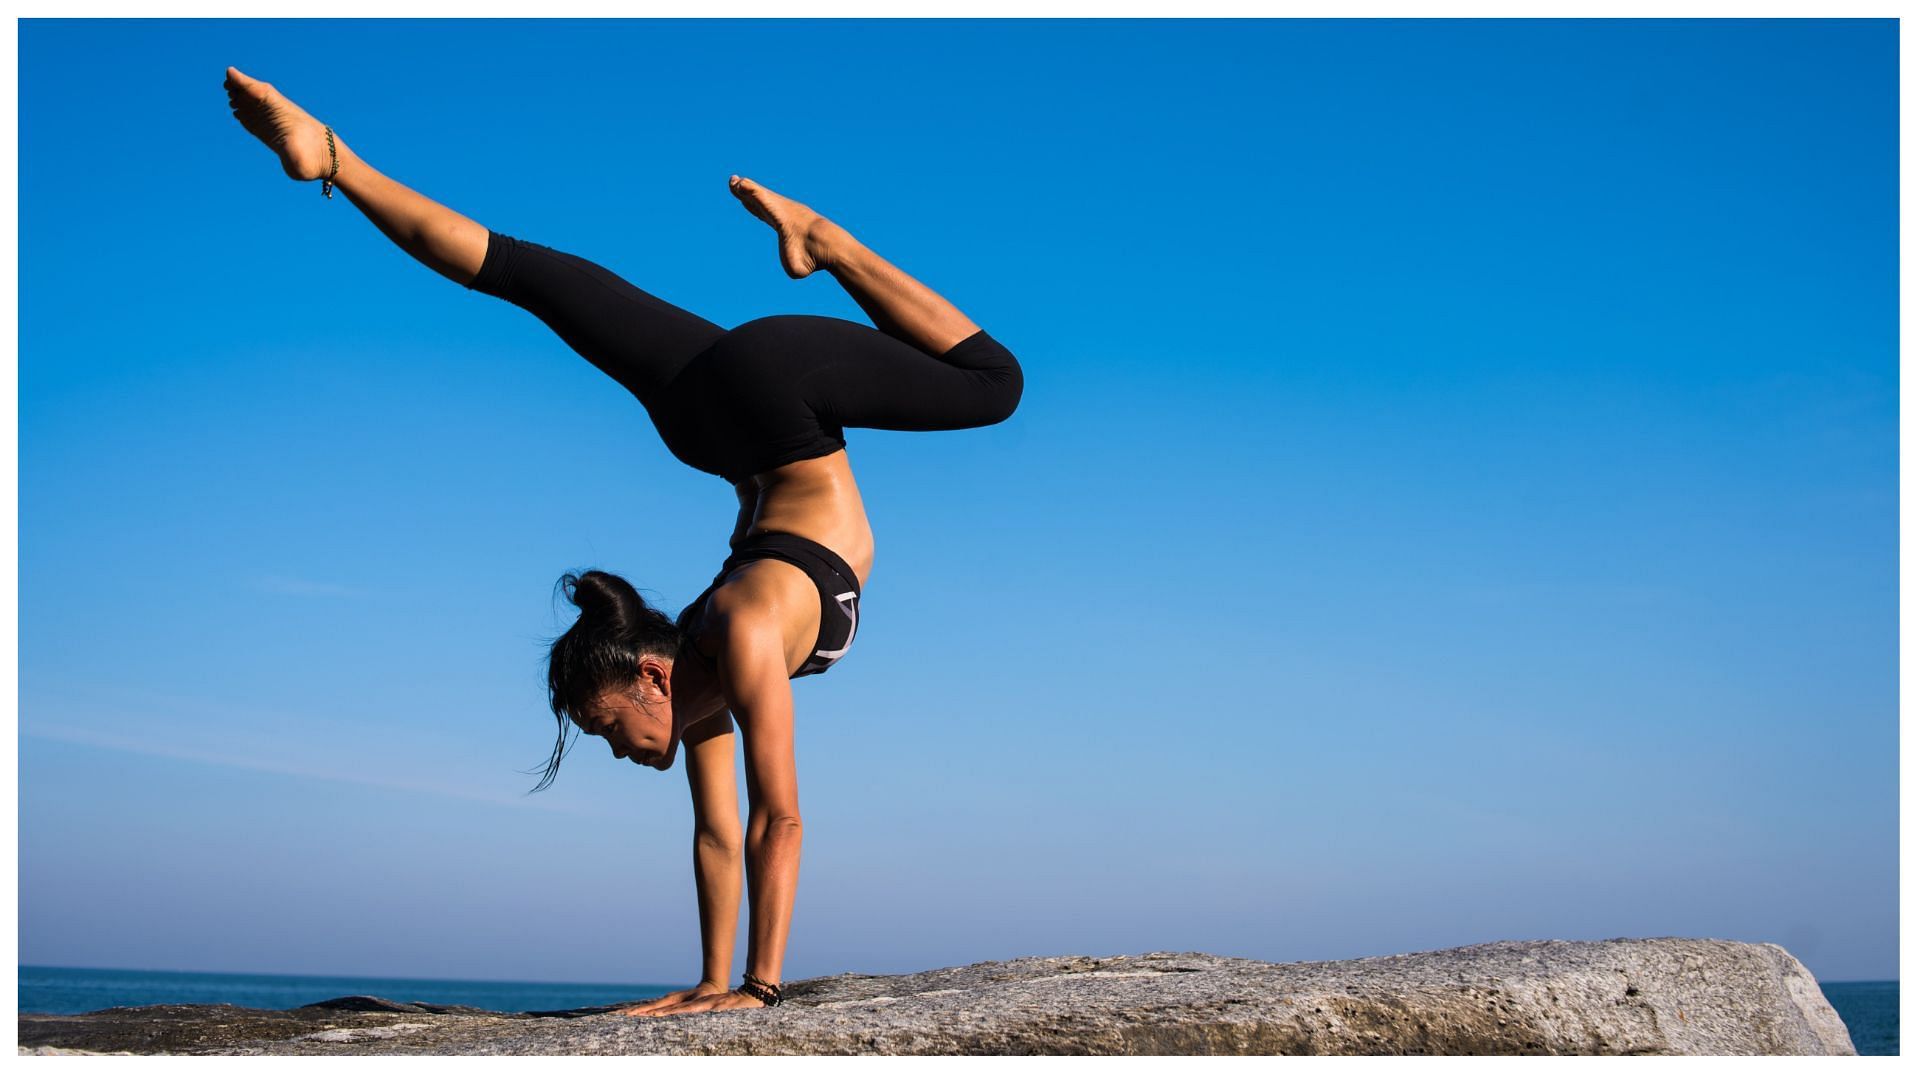 Yoga Exercises To Do Daily For More Flexibility.(Image via www.pexels,com)